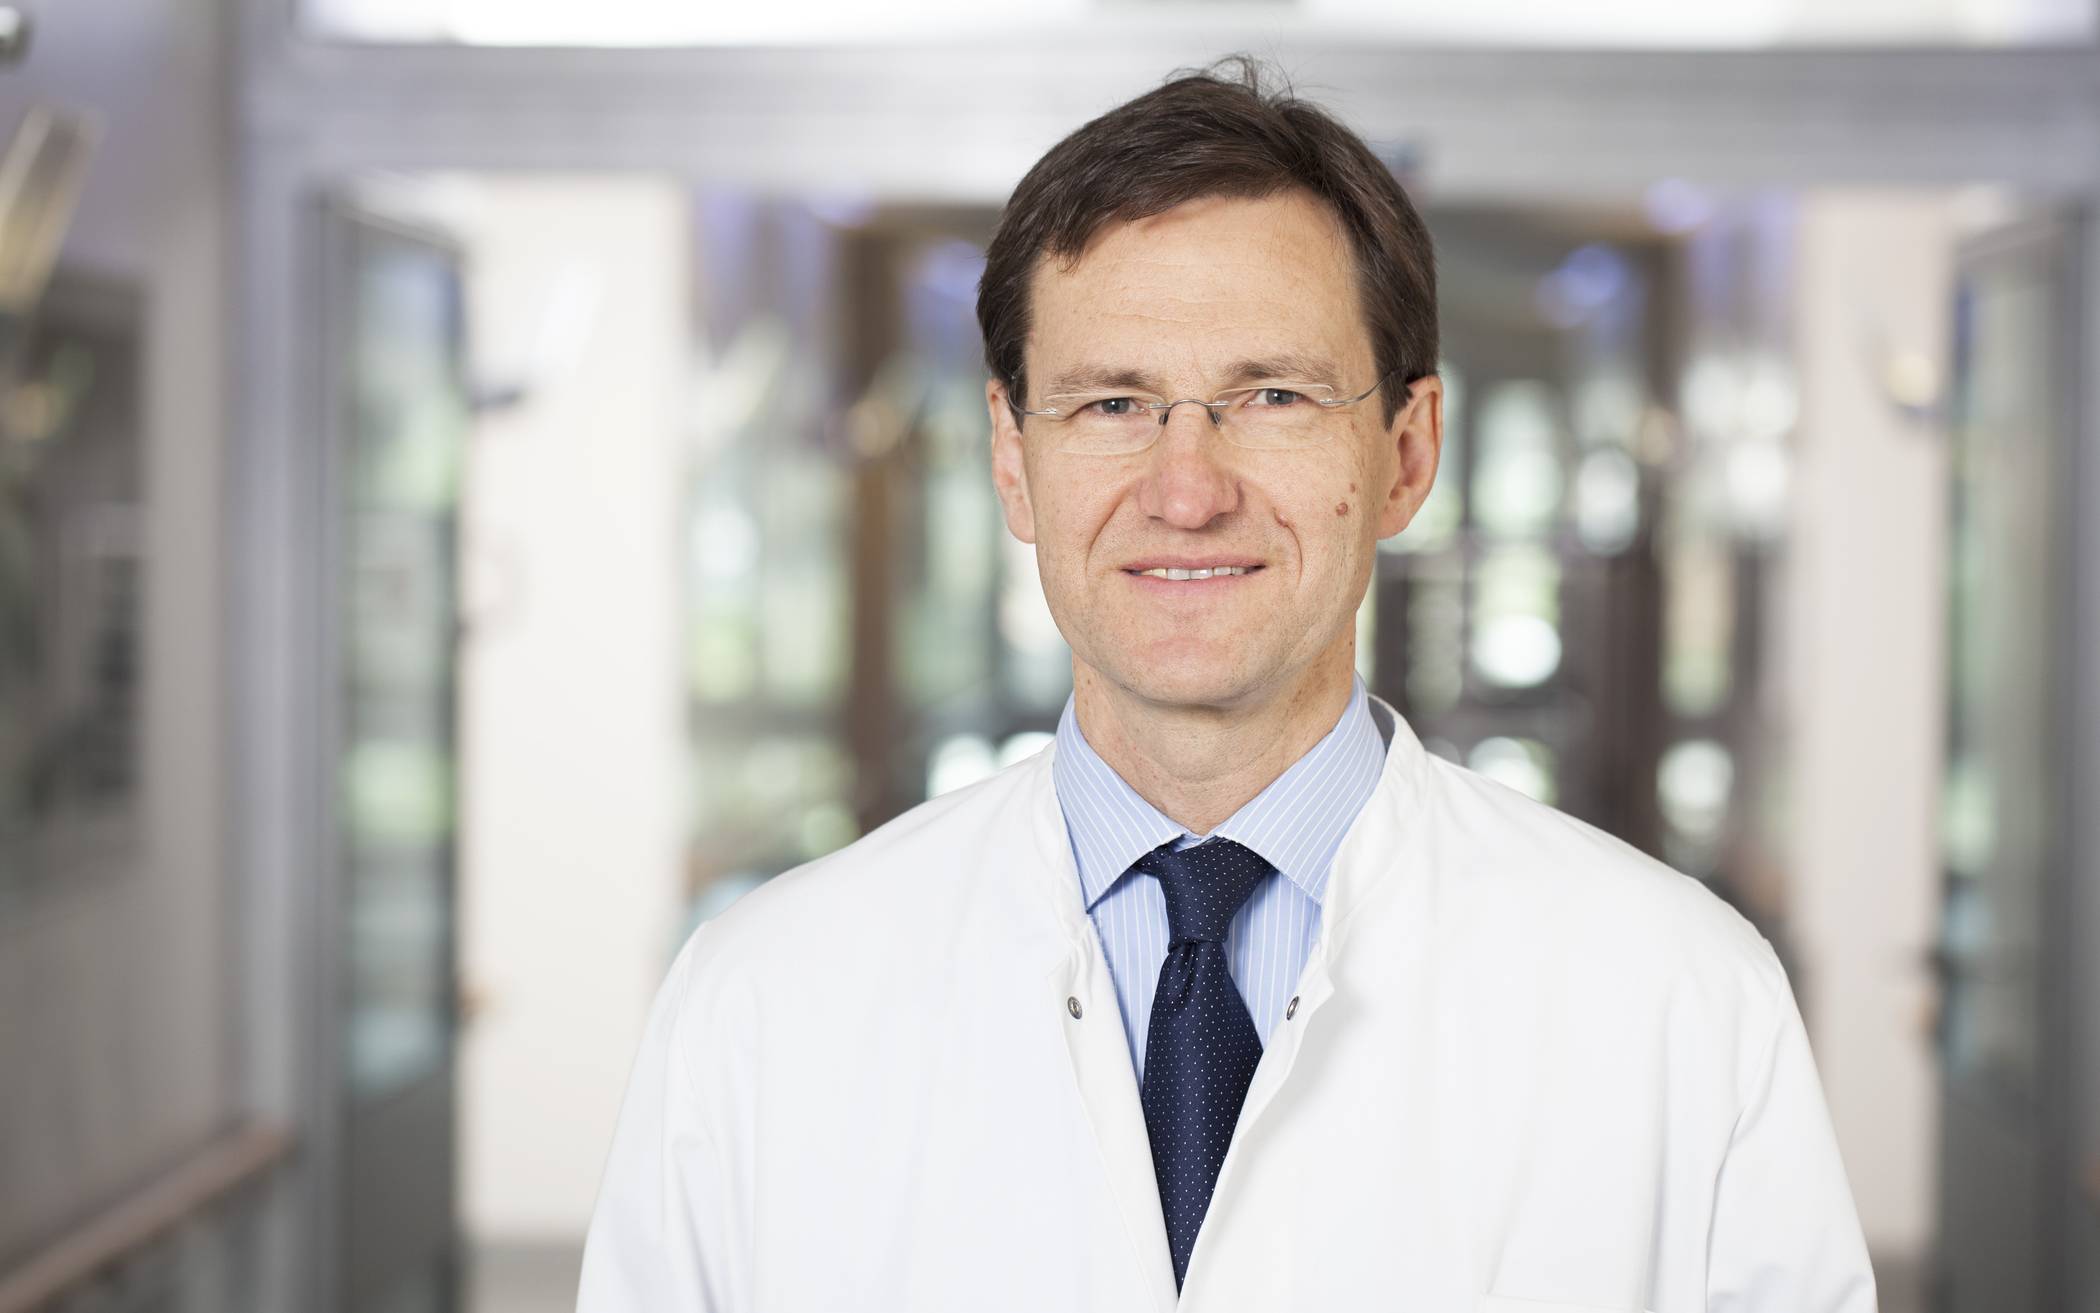  Prof. Dr. med. Bernd Sanner (Ärztlicher Direktor und Chefarzt der Medizinischen Klinik). 